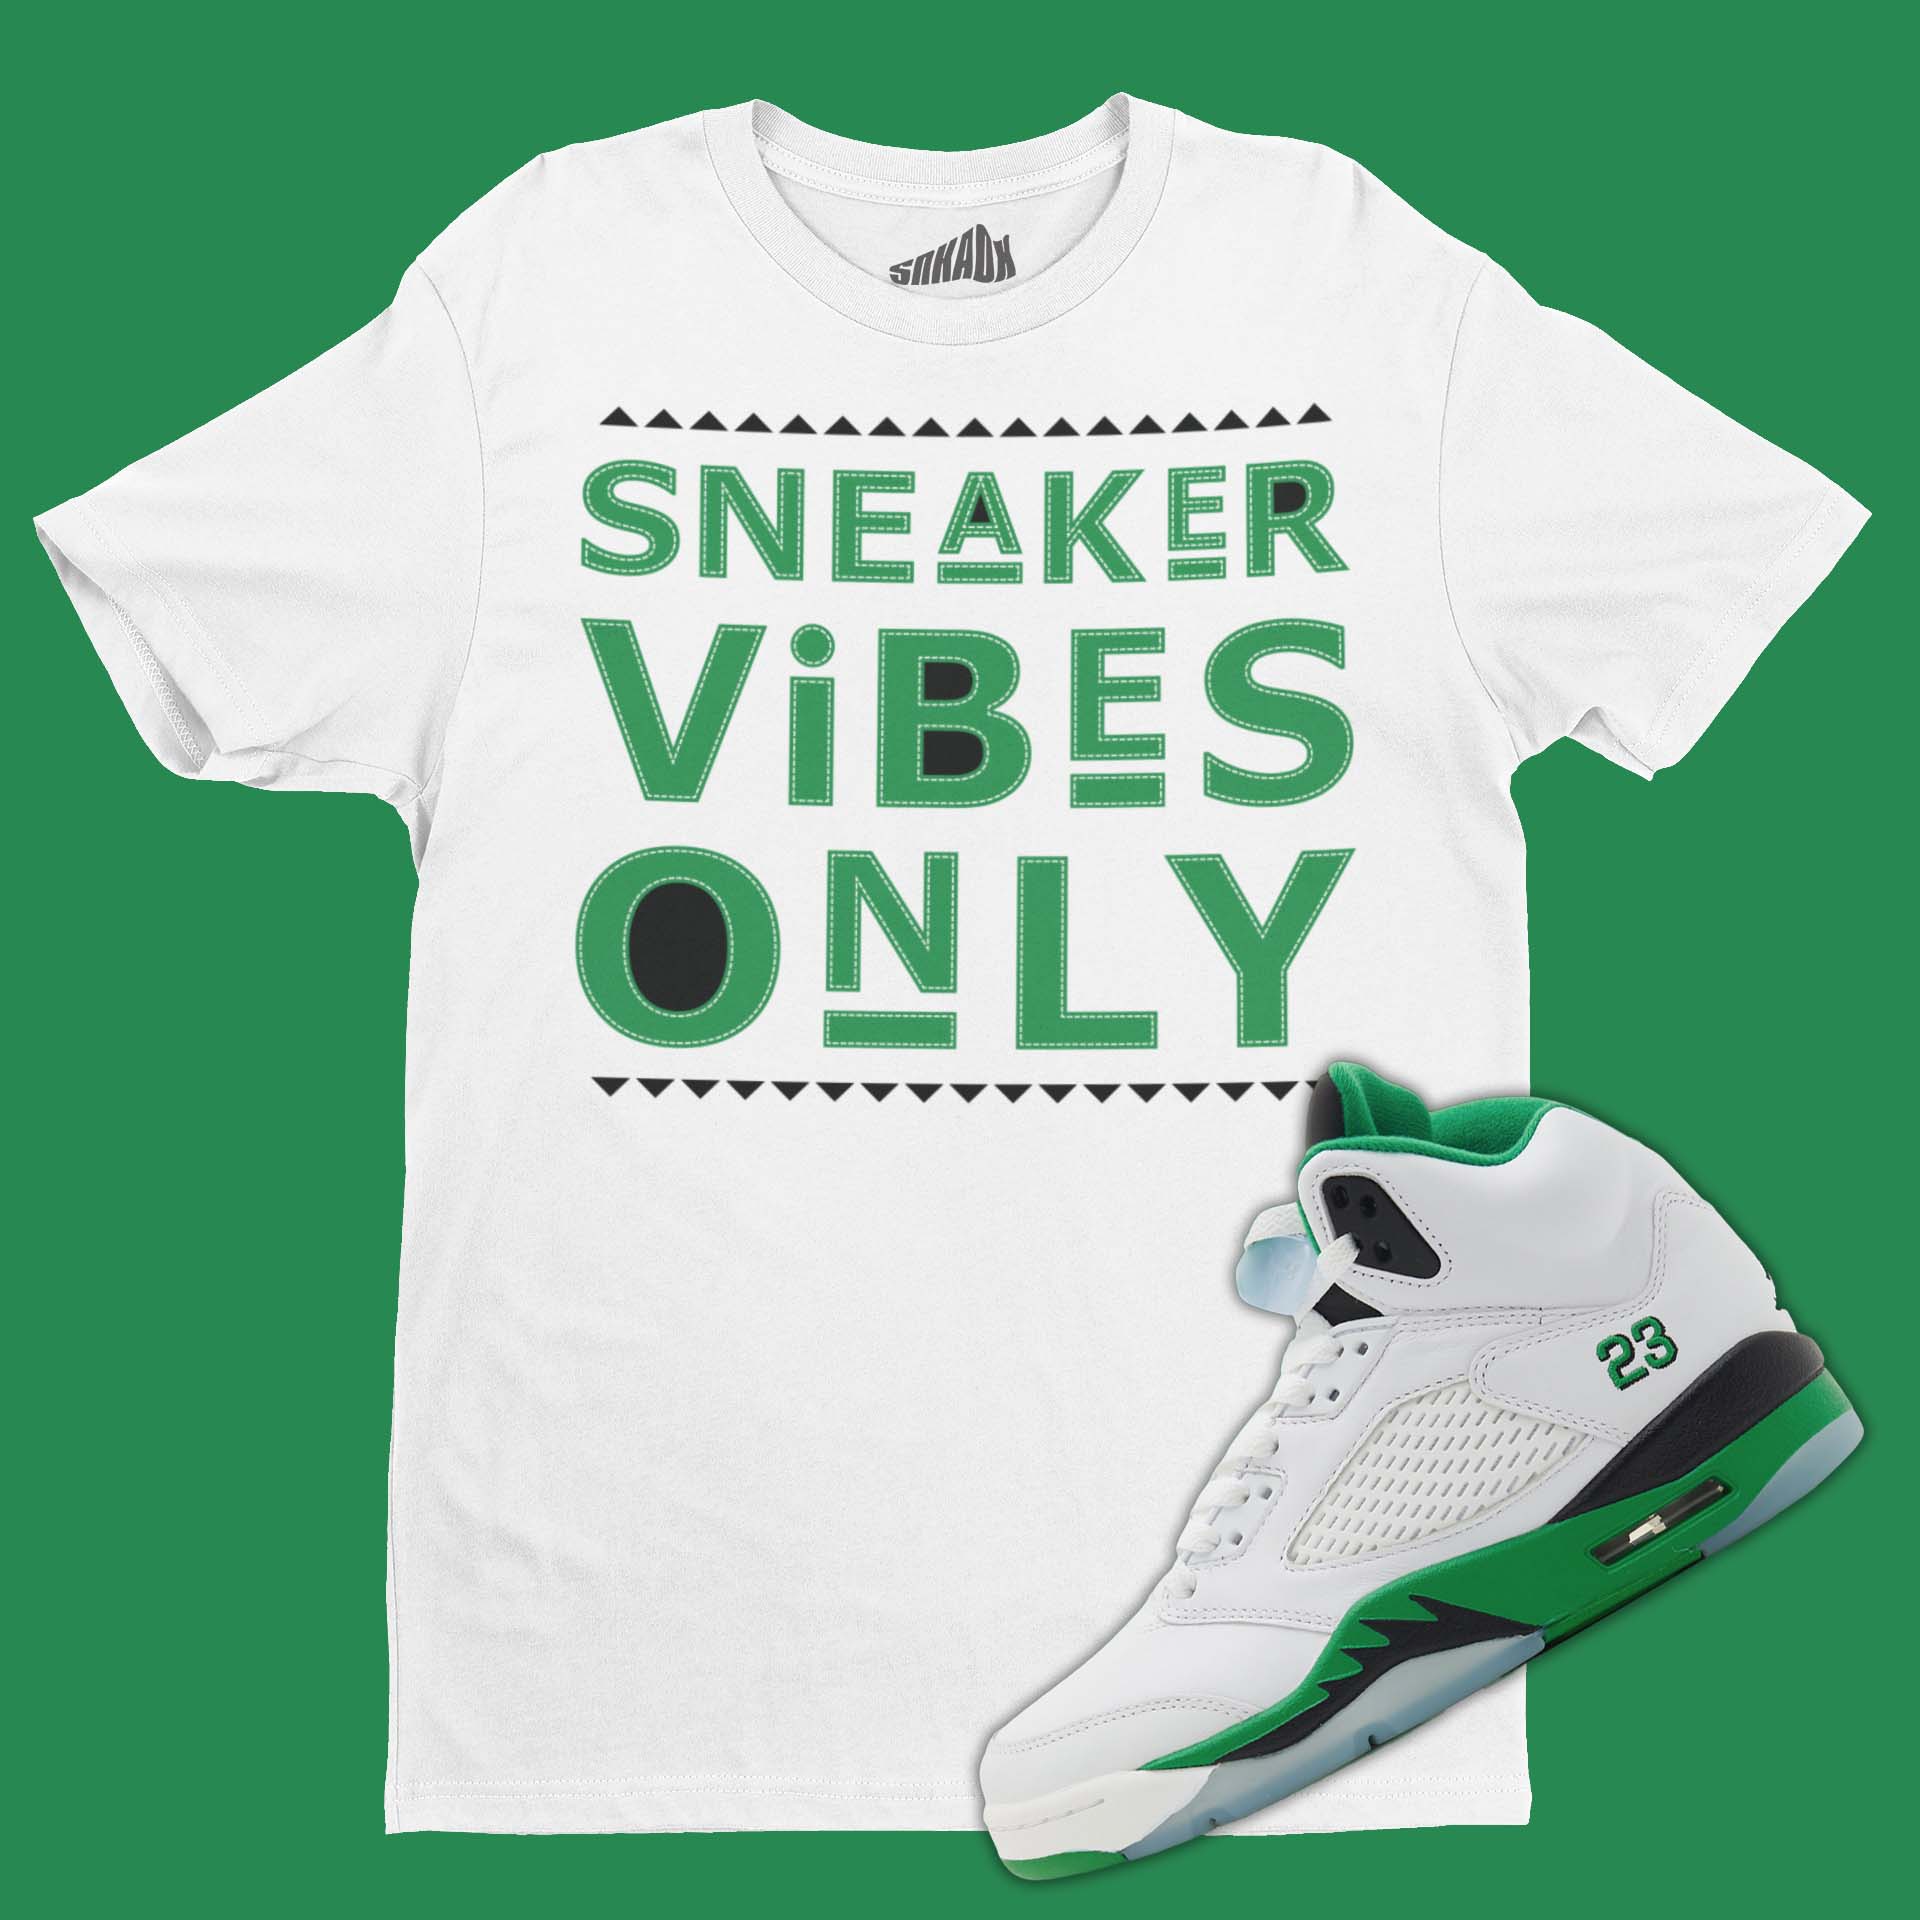 Sneaker Vibes Only T-Shirt Matching Air Jordan 5 Lucky Green